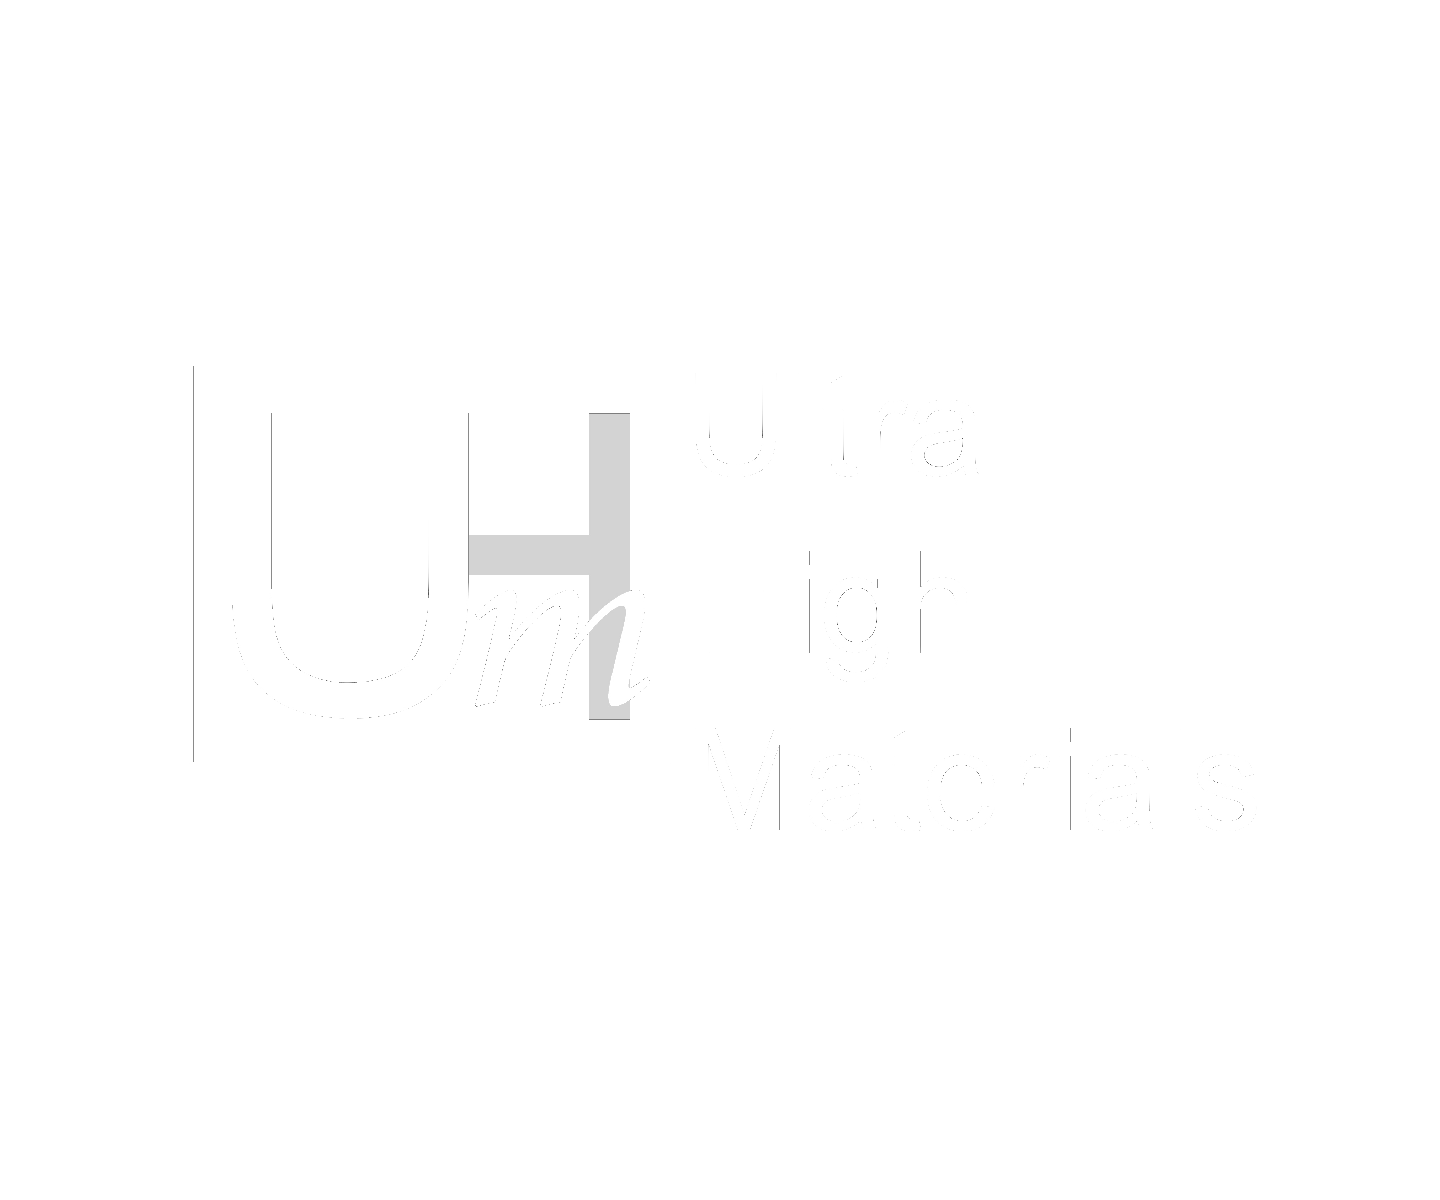 Ultra High Materials